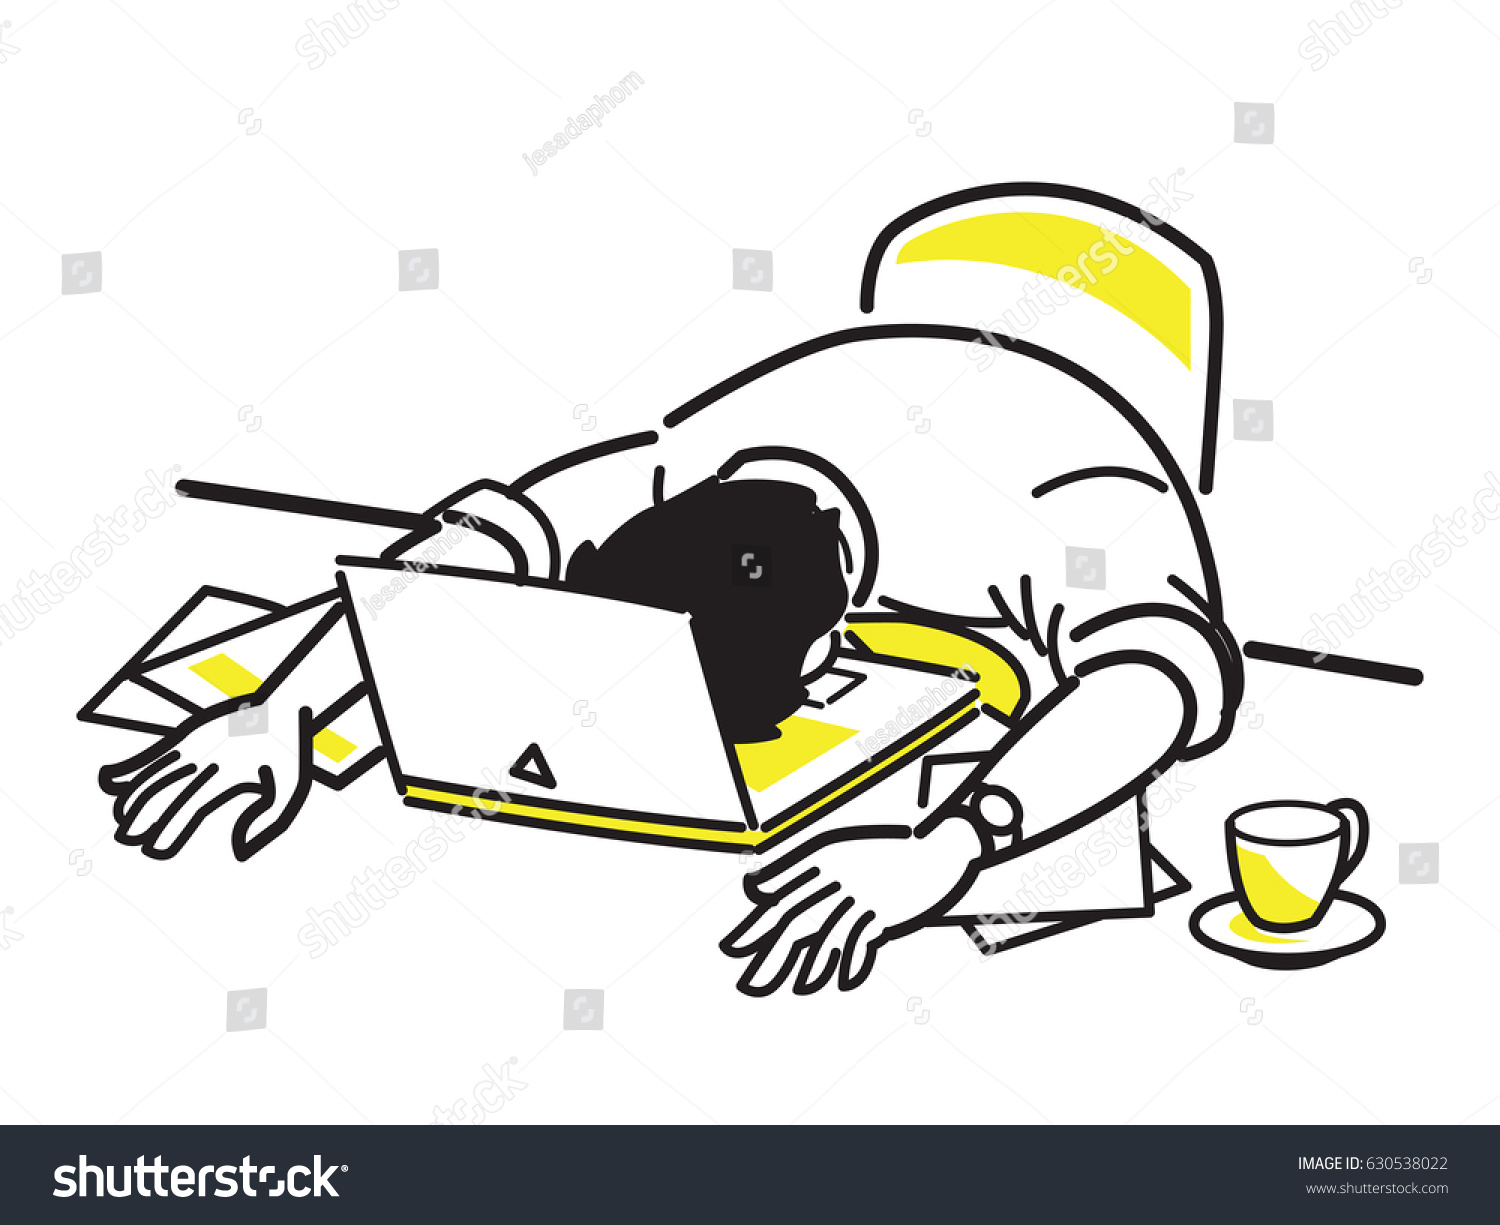 疲れた実業家がノートパソコンの上で寝 机の上で過負荷の仕事をし 疲れ果て 疲れ果てた様子を描いたベクターイラスト 線の描画スタイル シンプルなデザイン のベクター画像素材 ロイヤリティフリー